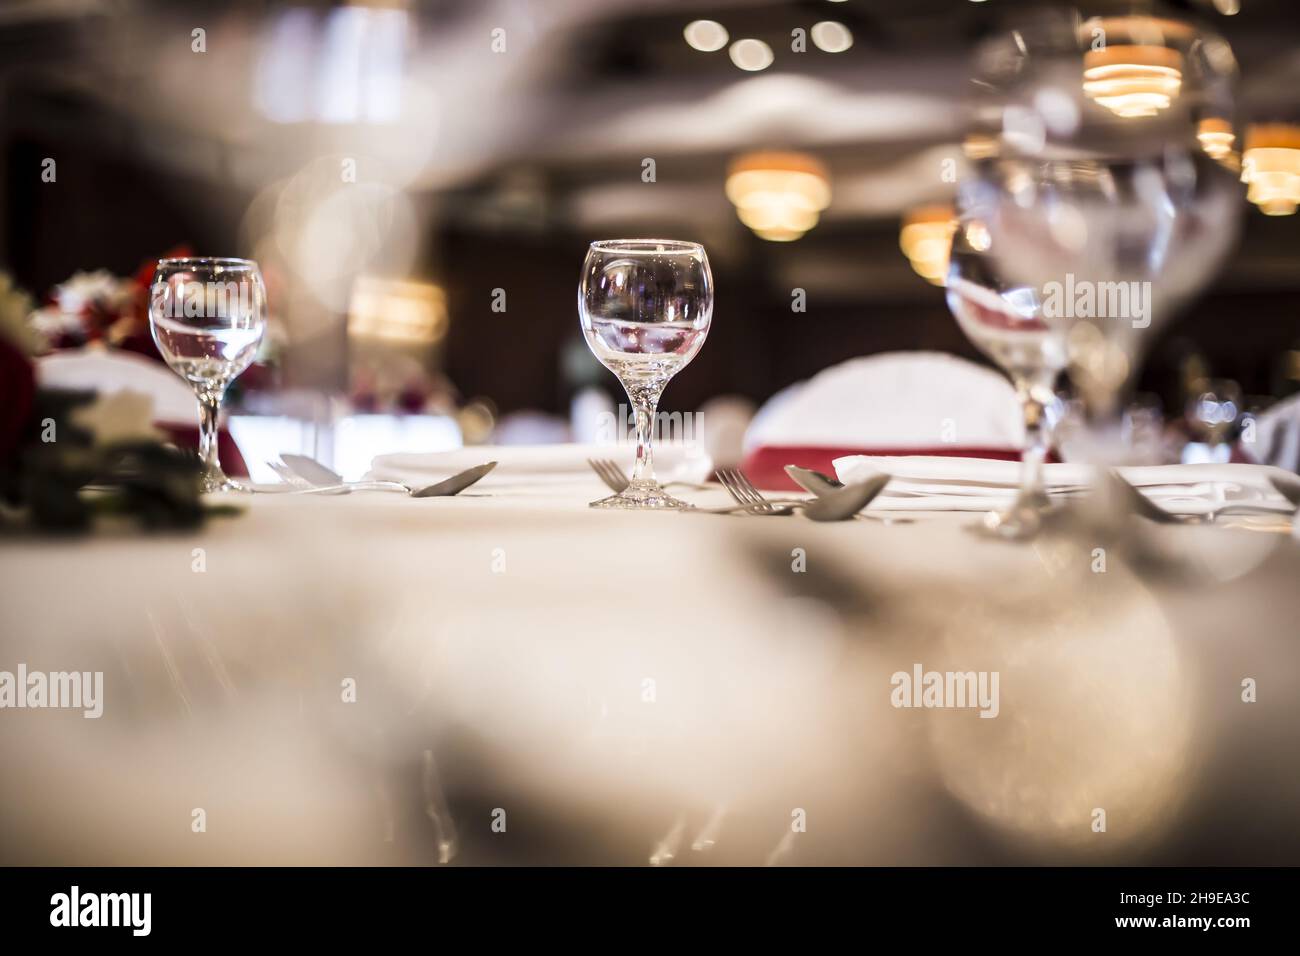 Vue panoramique d'une tasse de verre remplie de liquide sur une table Banque D'Images